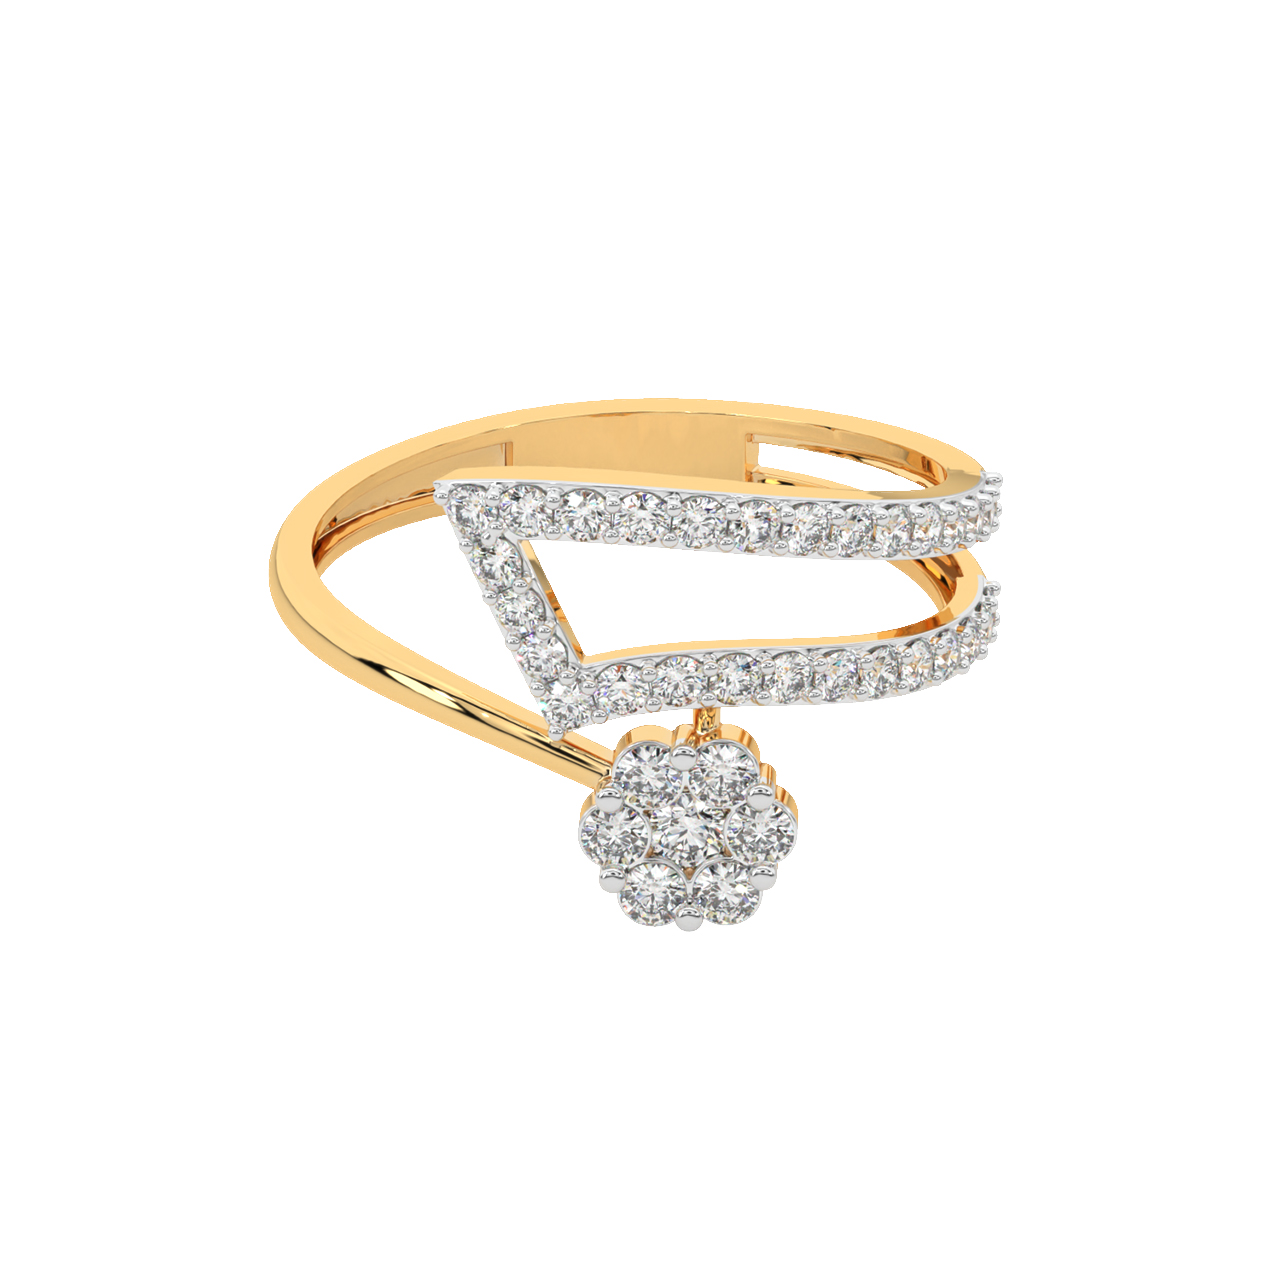 Alaina Diamond Engagement Ring